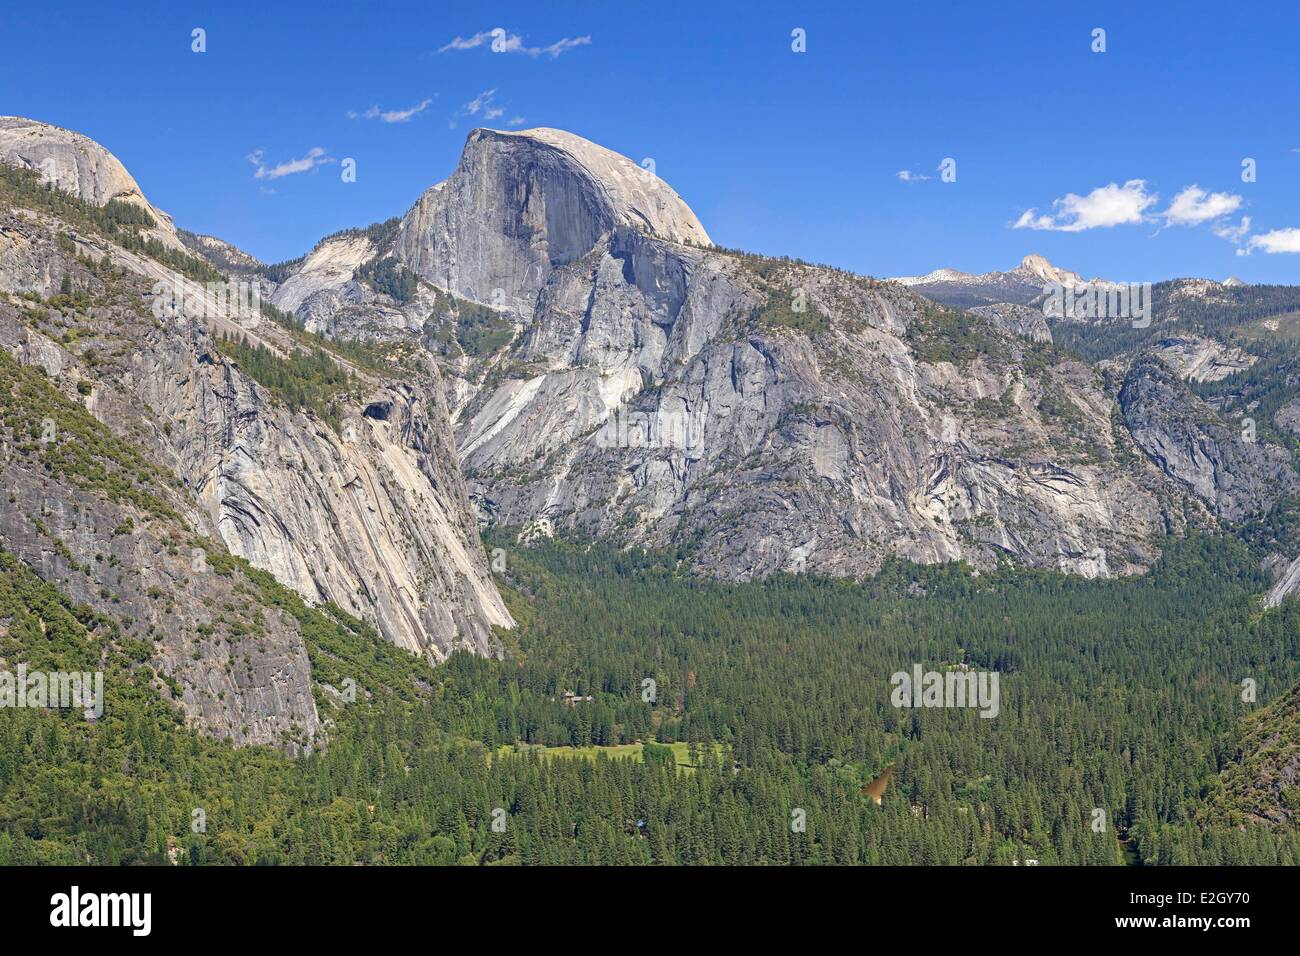 Stati Uniti California Sierra Nevada Parco Nazionale Yosemite elencati come patrimonio mondiale dall' UNESCO Yosemite Valley con mezza cupola Foto Stock